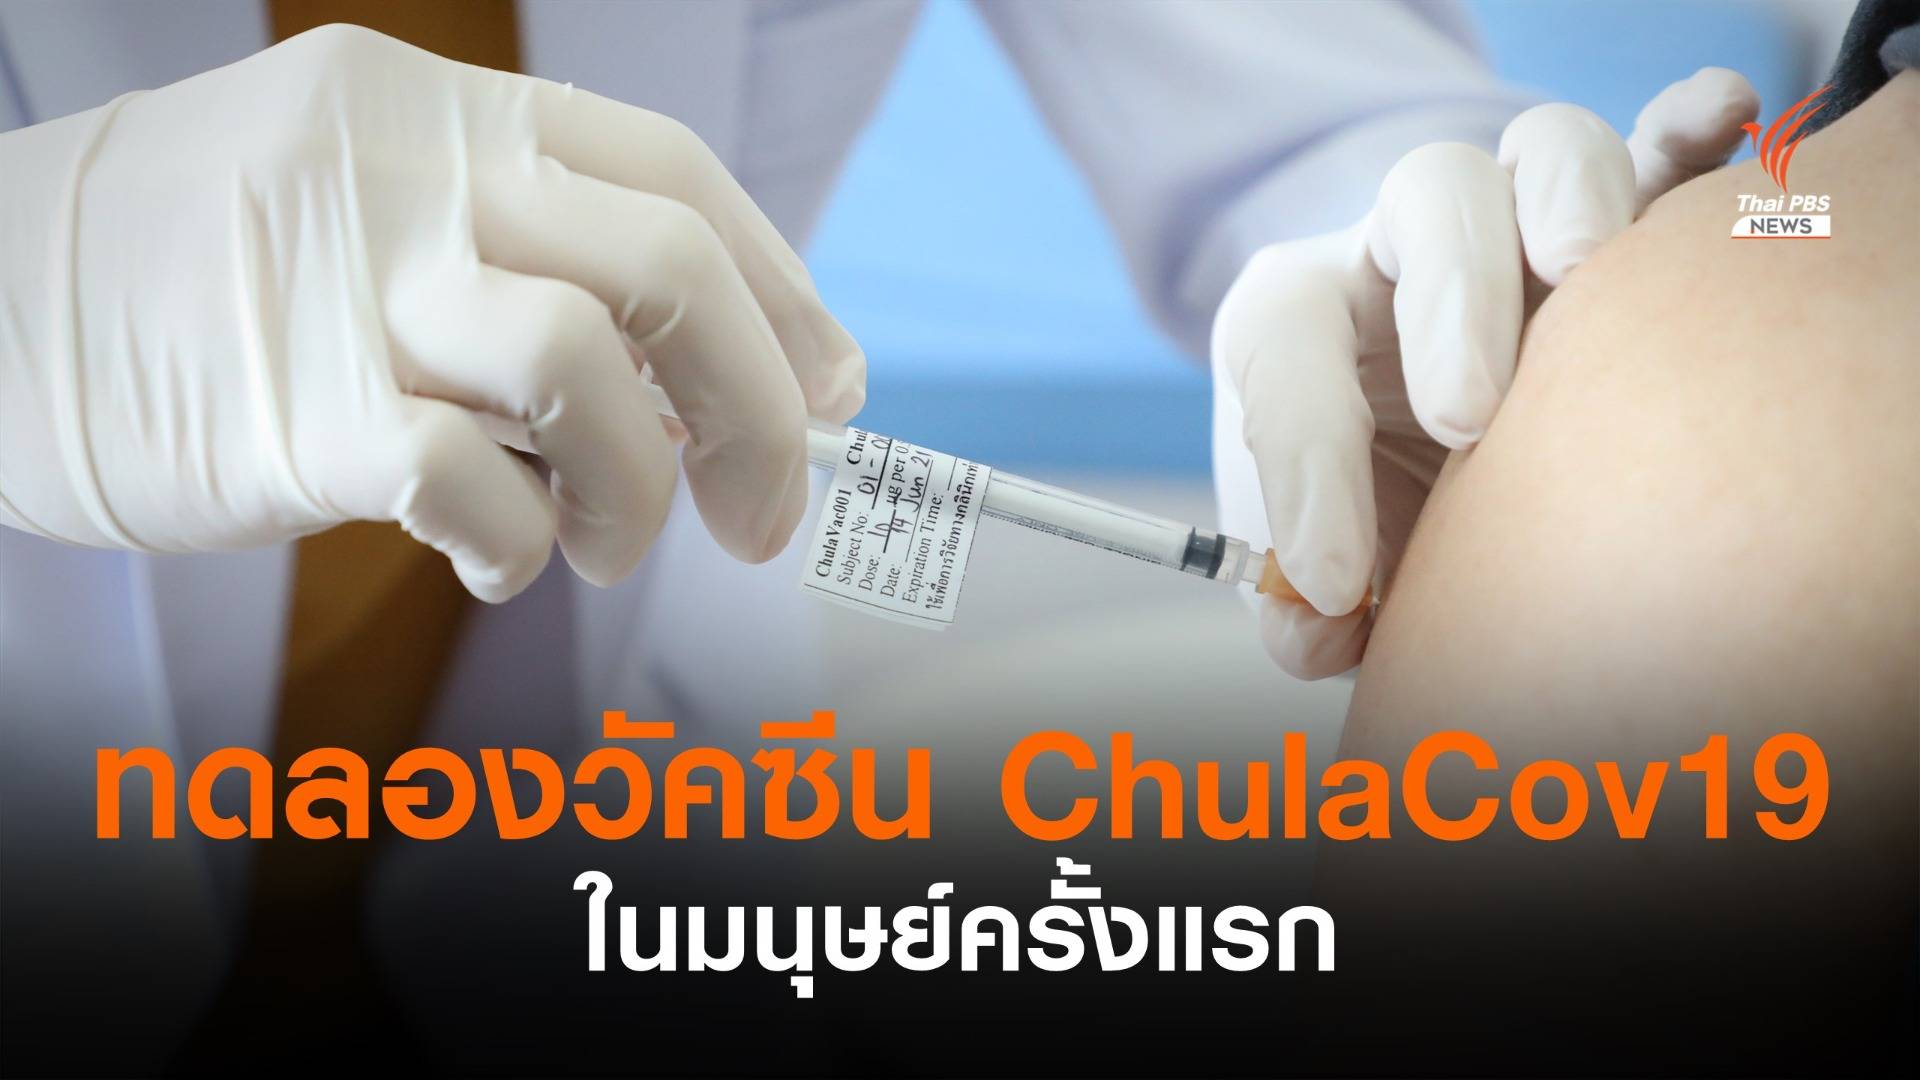 แพทย์จุฬาฯ ทดลองฉีดวัคซีน ChulaCov19 ในมนุษย์ครั้งแรก